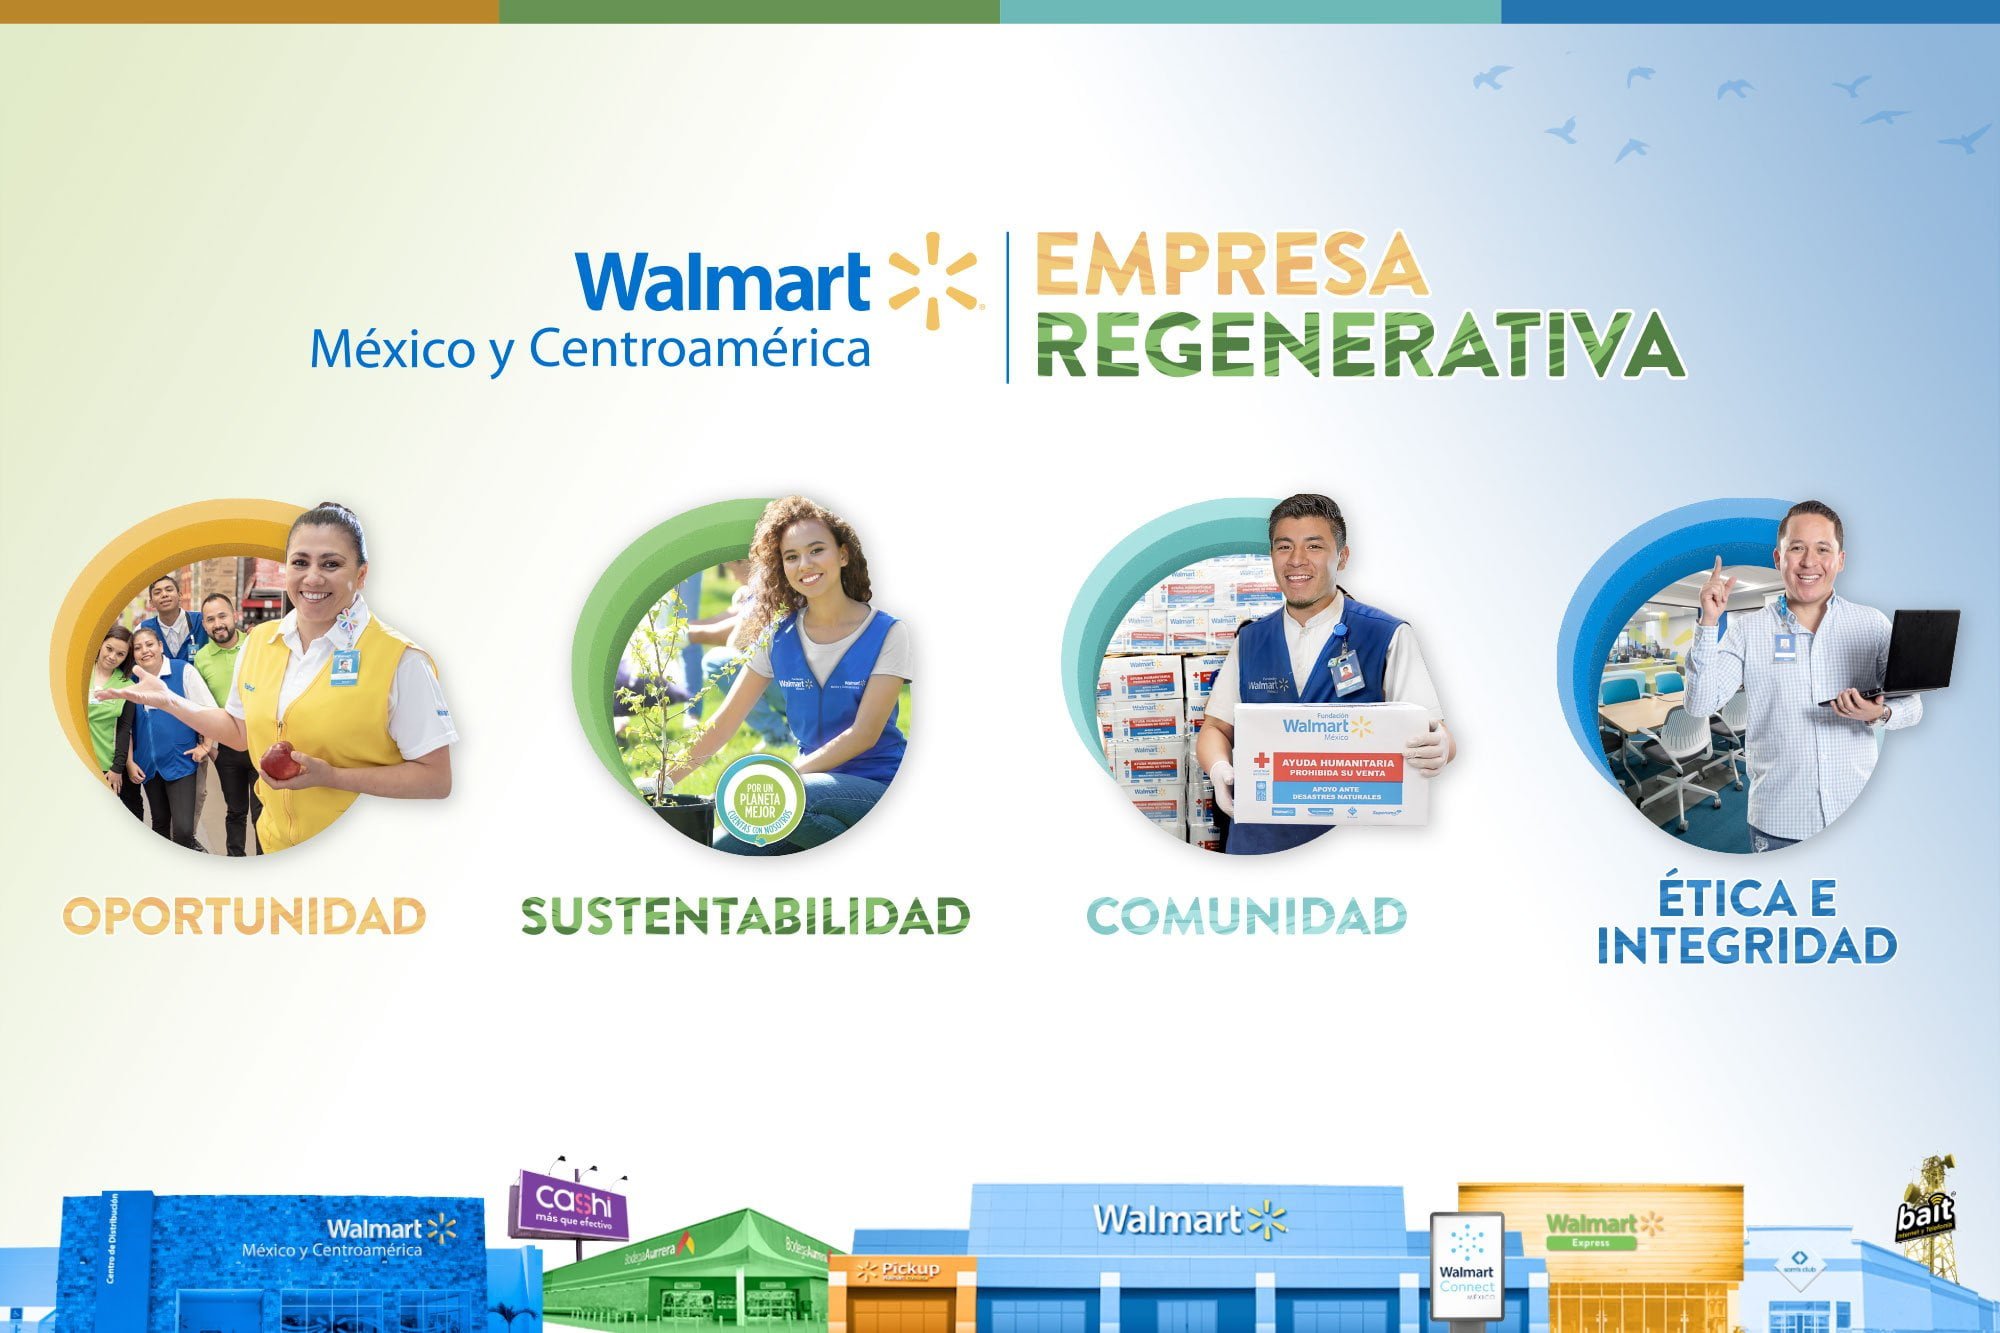 Walmart de México y Centroamérica asume el compromiso de ser Empresa Regenerativa